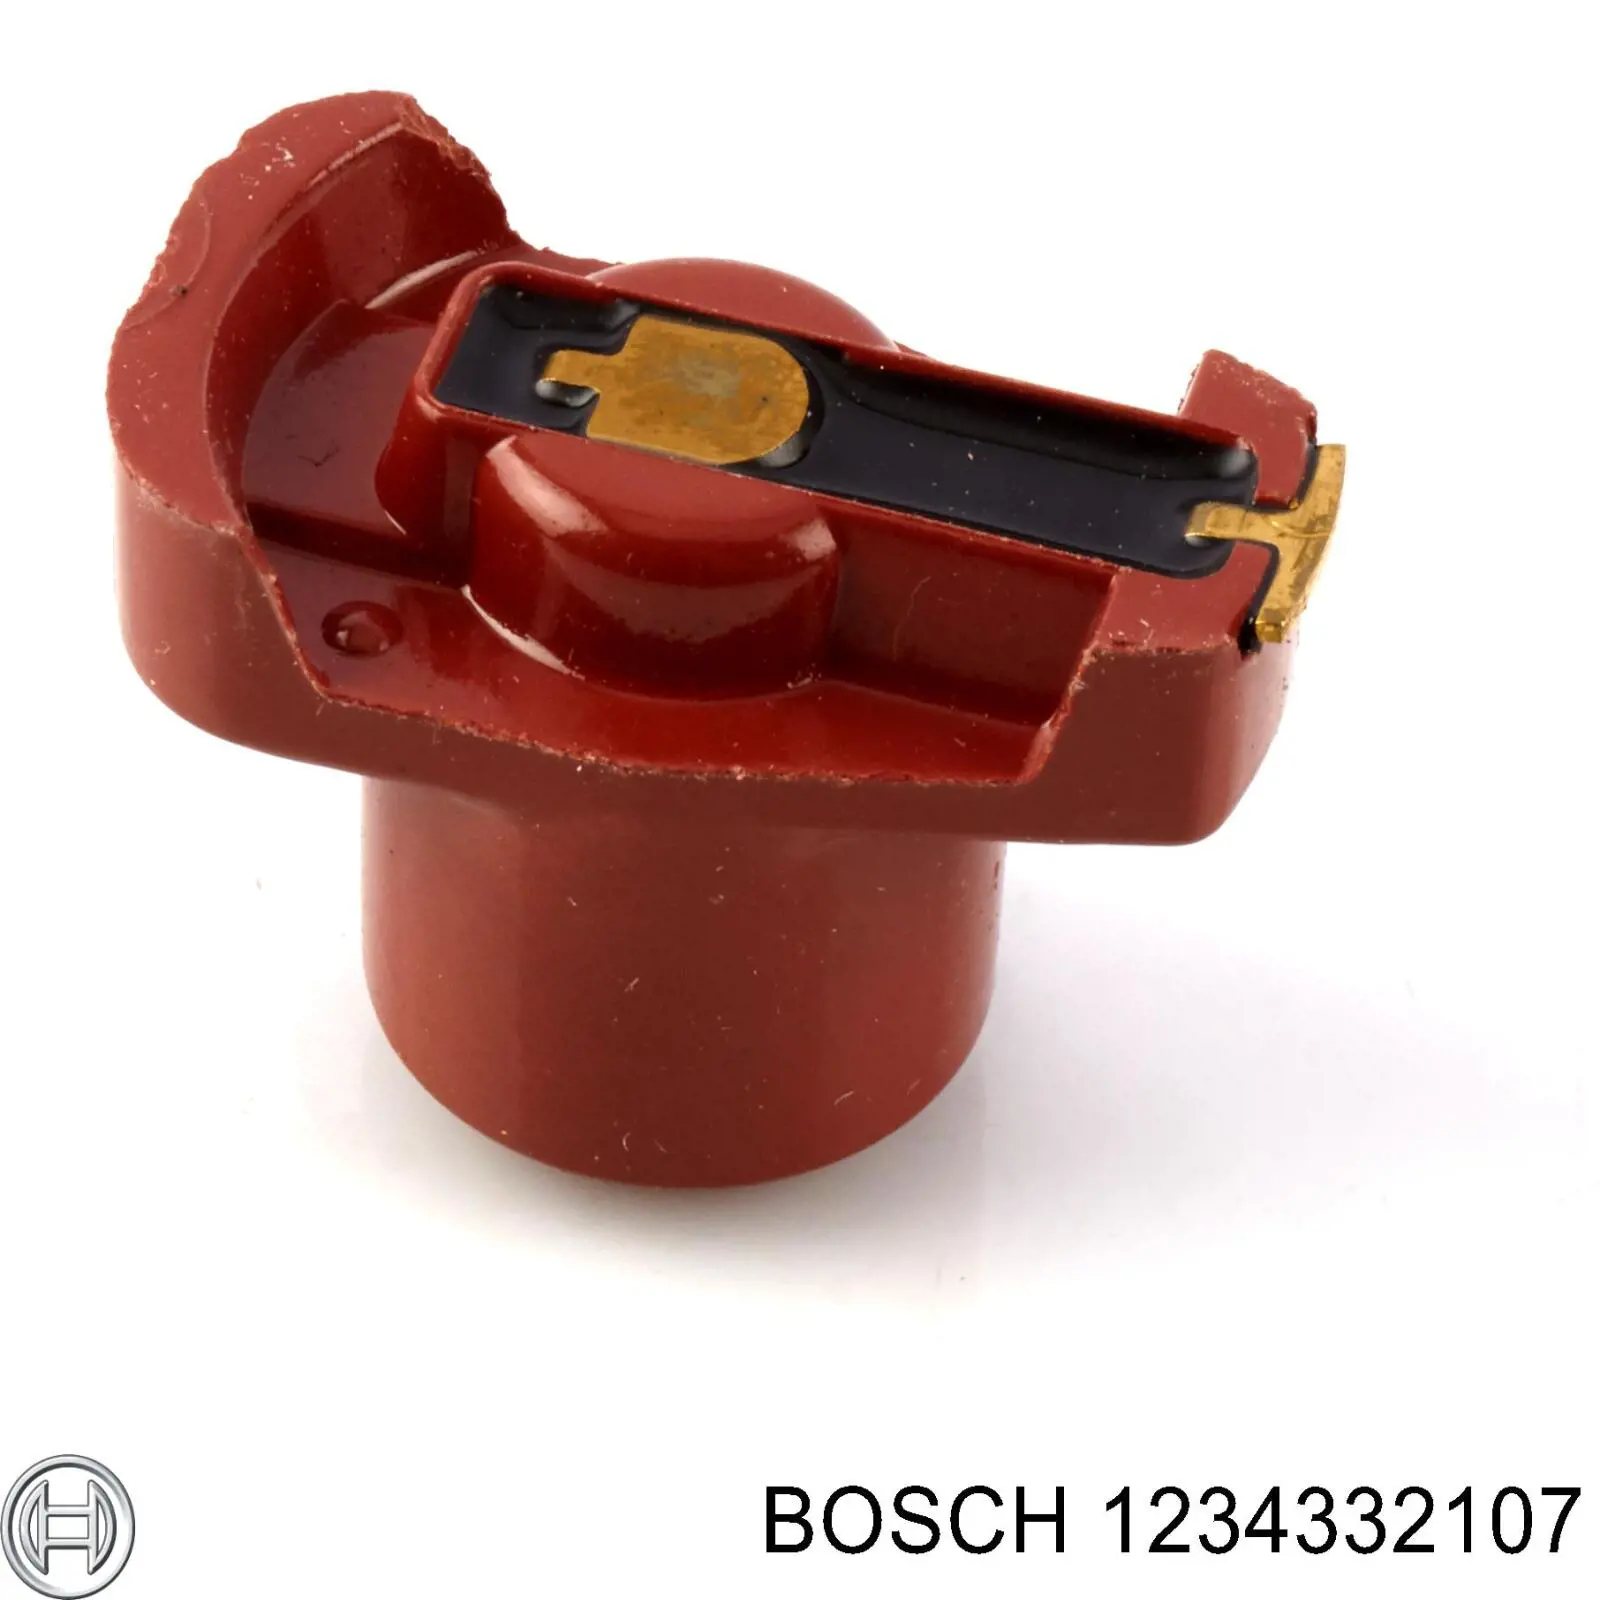 1234332107 Bosch бегунок (ротор распределителя зажигания, трамблера)